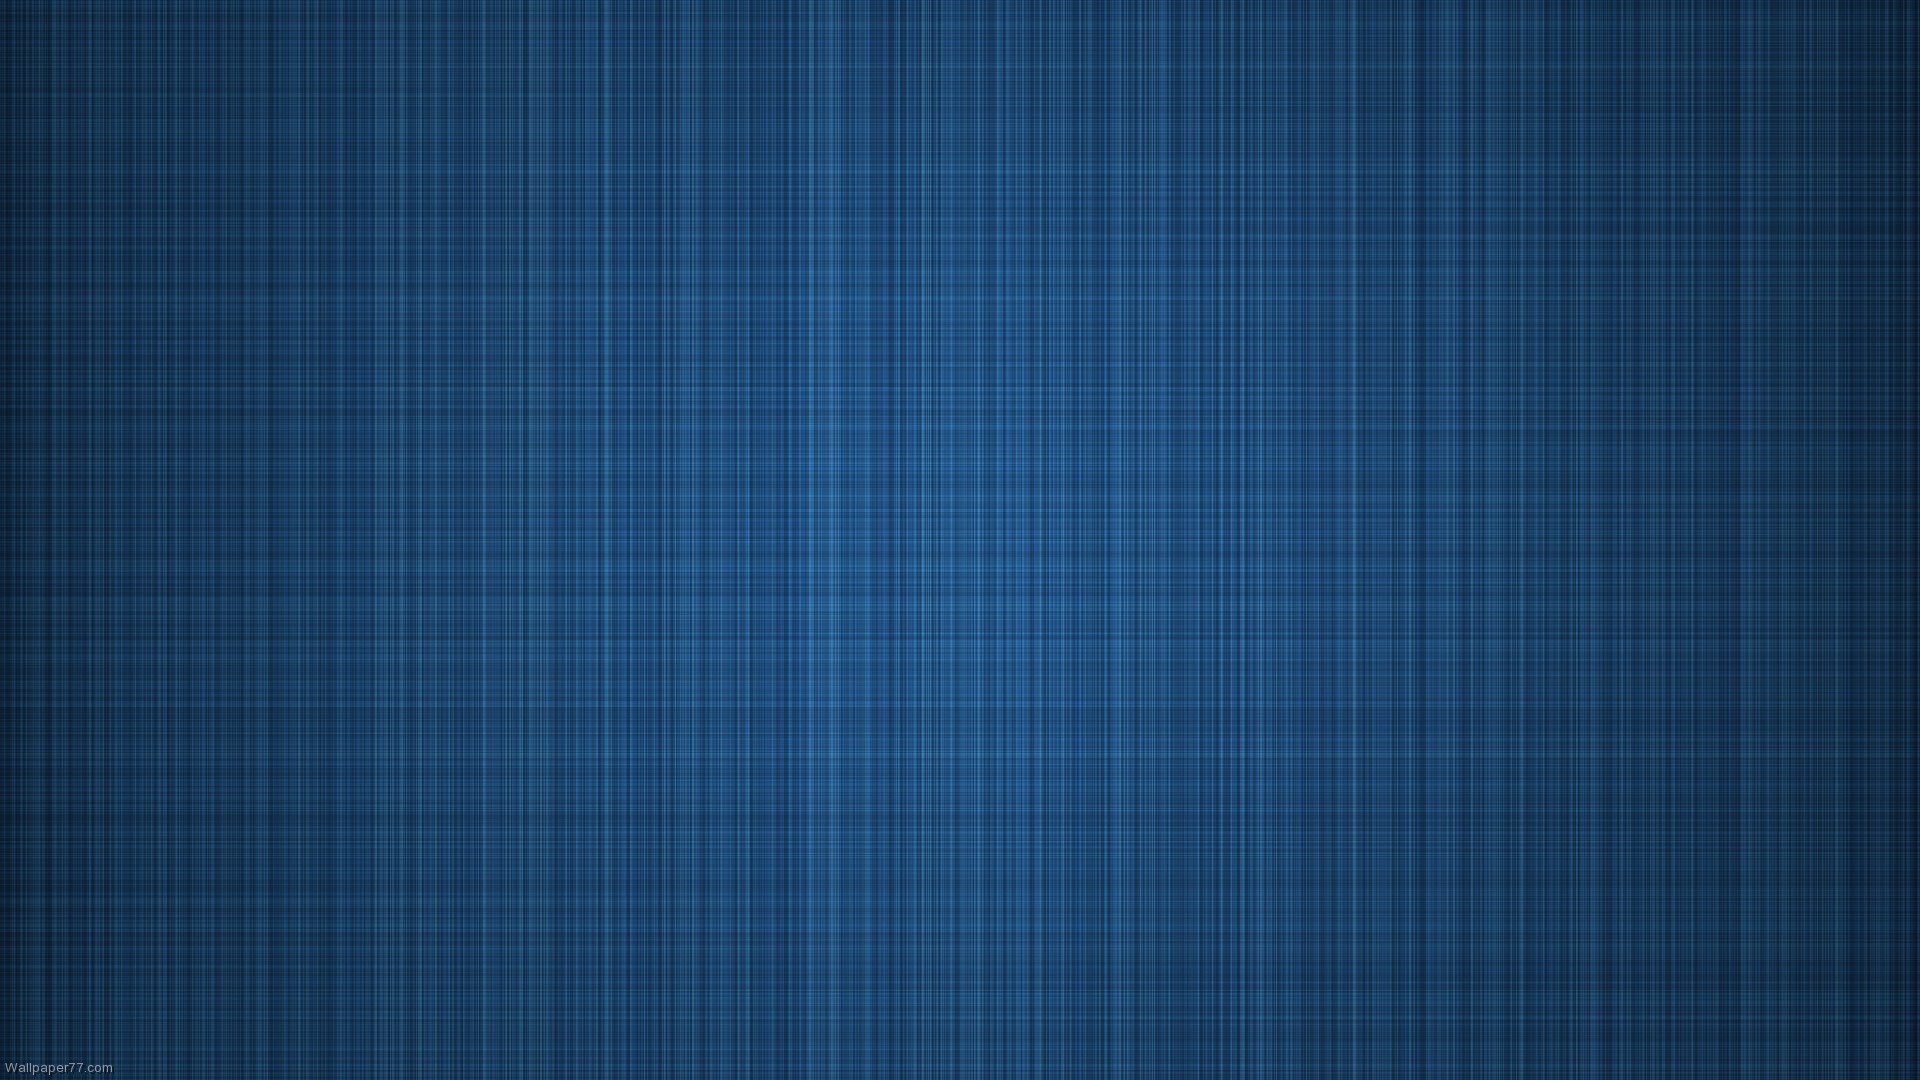 Blueprint-ipad-3-wallpaper-ipad-wallpaper-retina-display-wallpaper-the-new-ipad-wallpaper--1920x1080.jpg